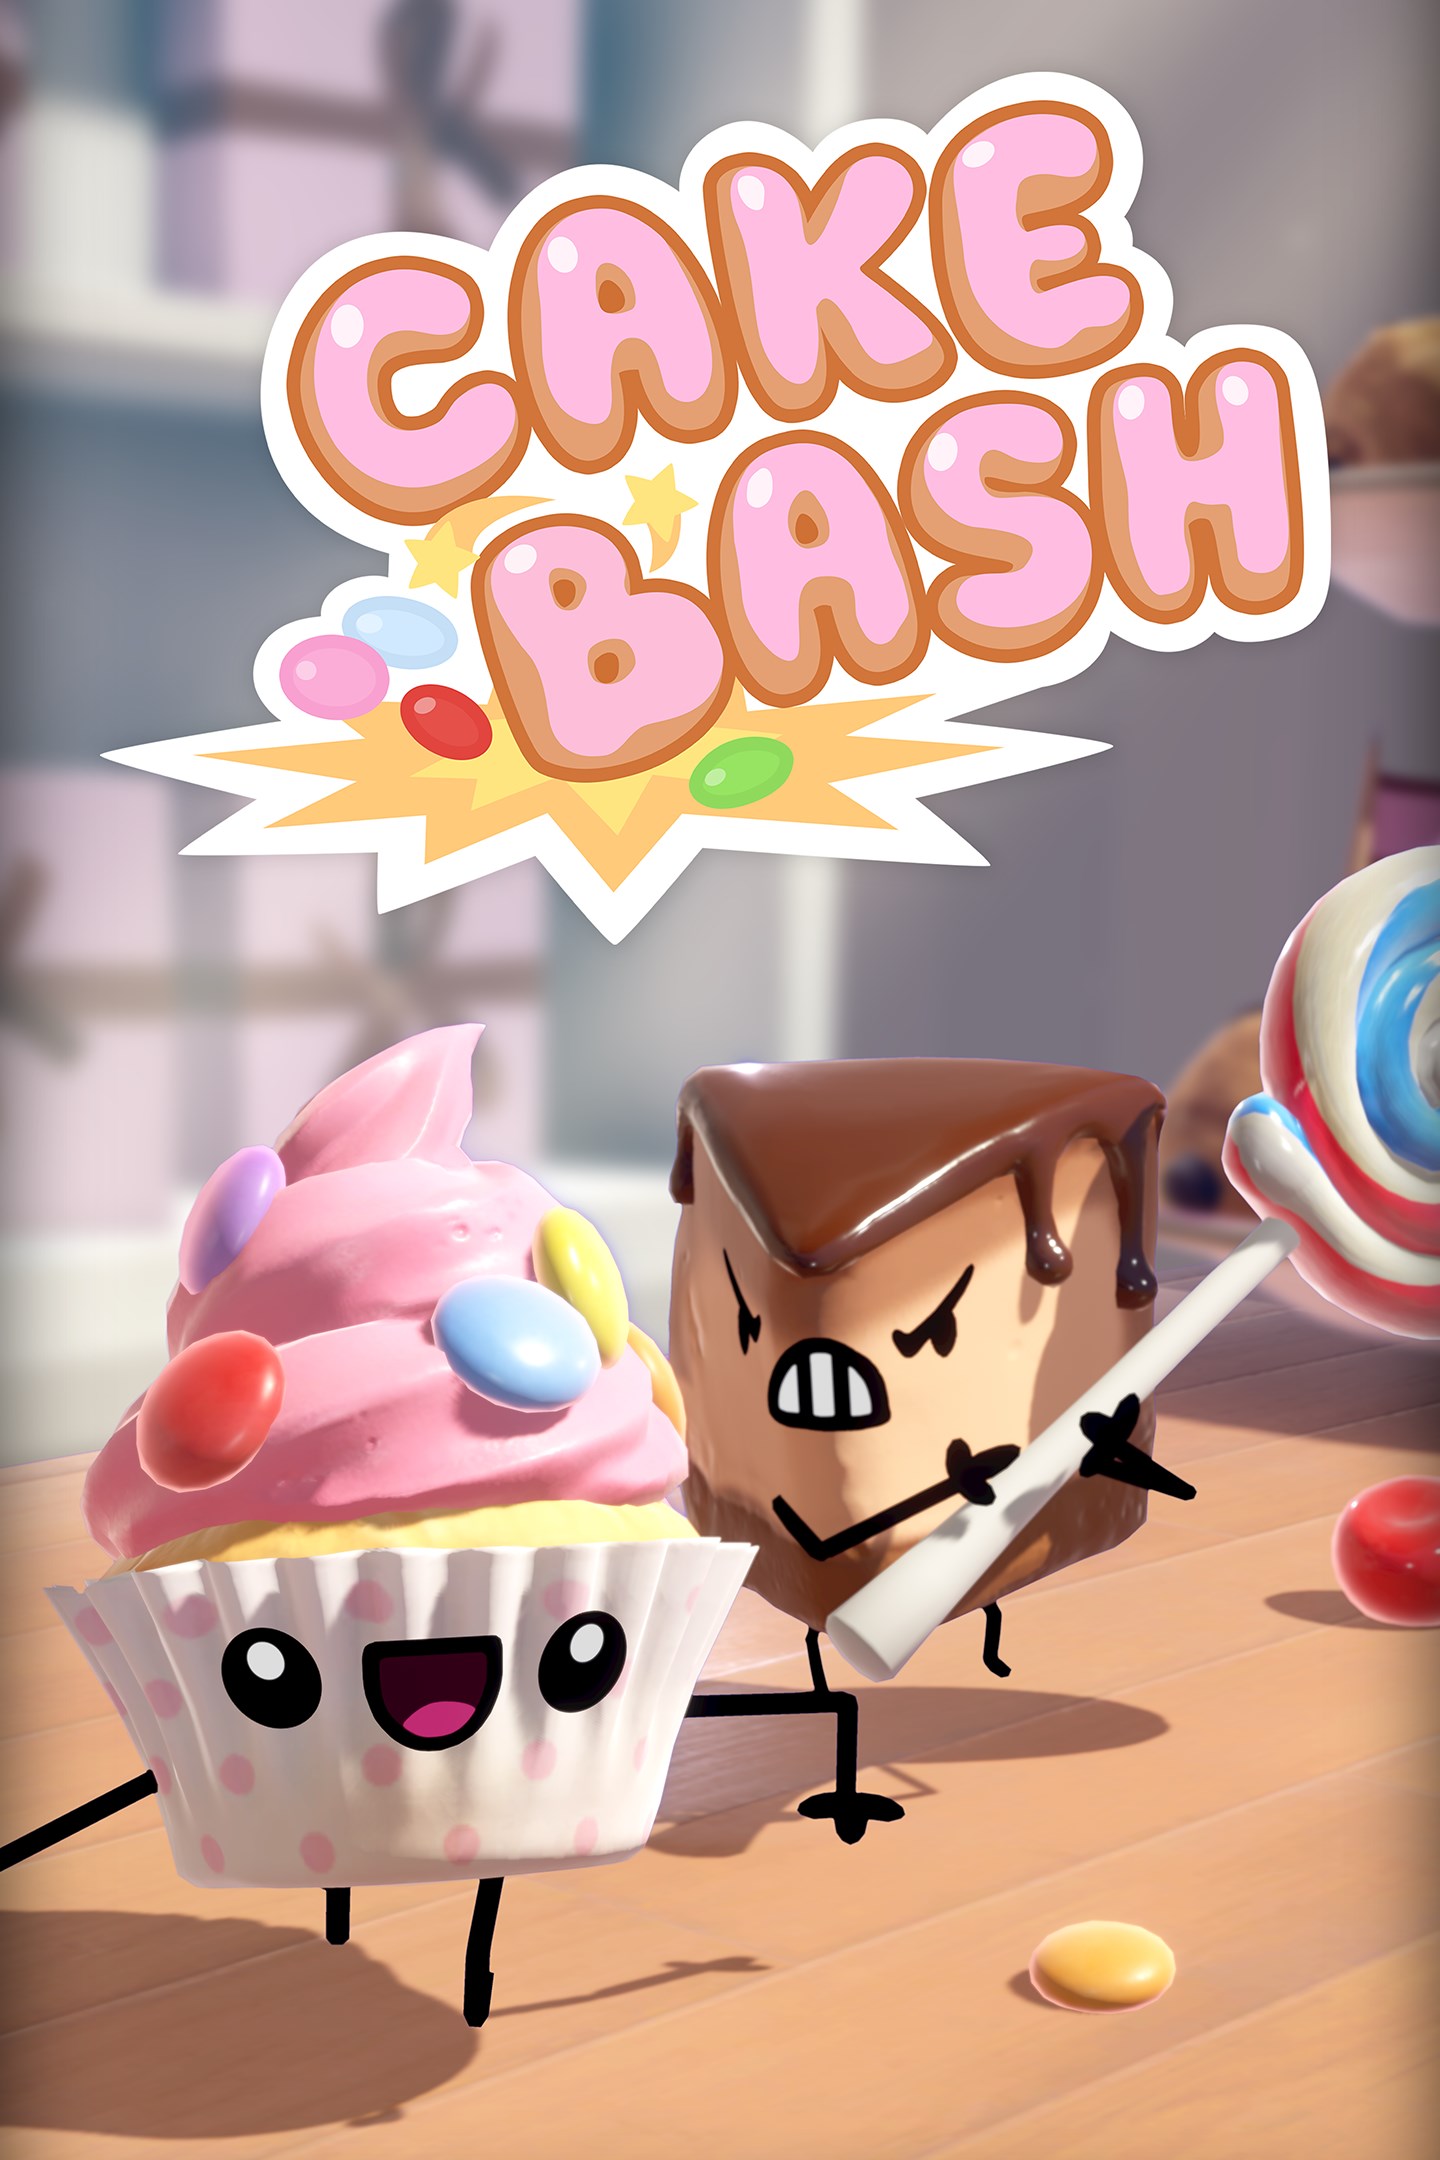 Conheça os bolos de Cake Bash, chegando ao Xbox One em 15 de outubro